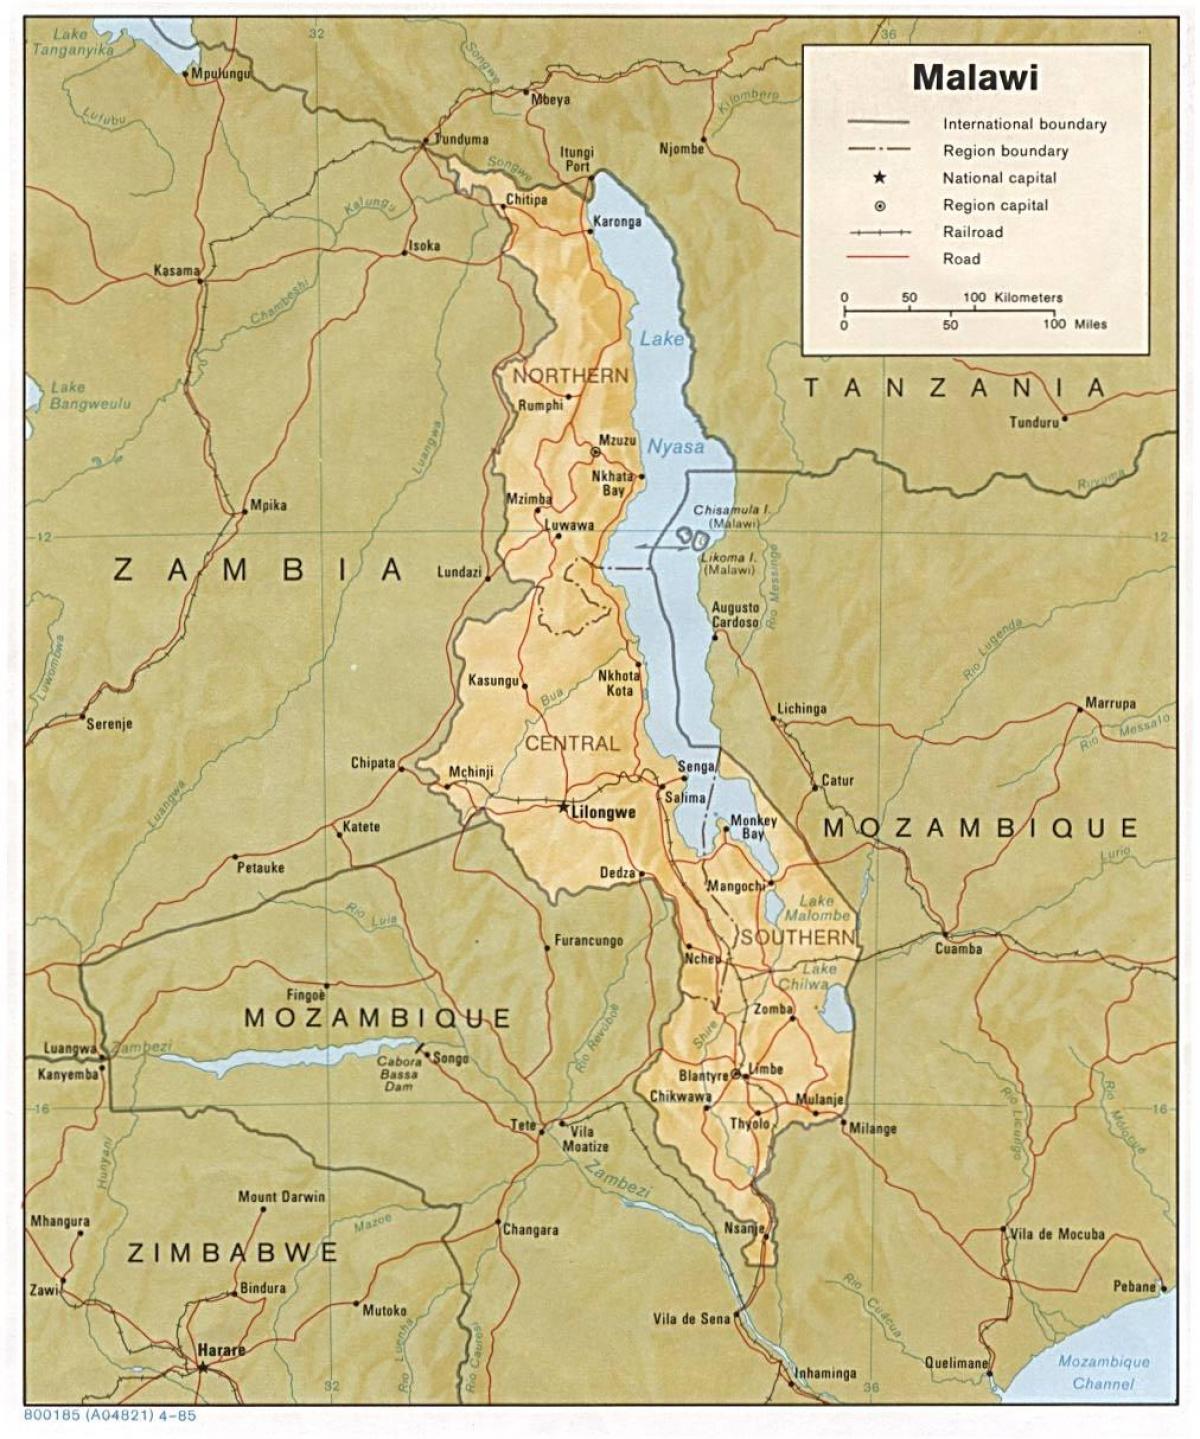 lake Malawi på kartet